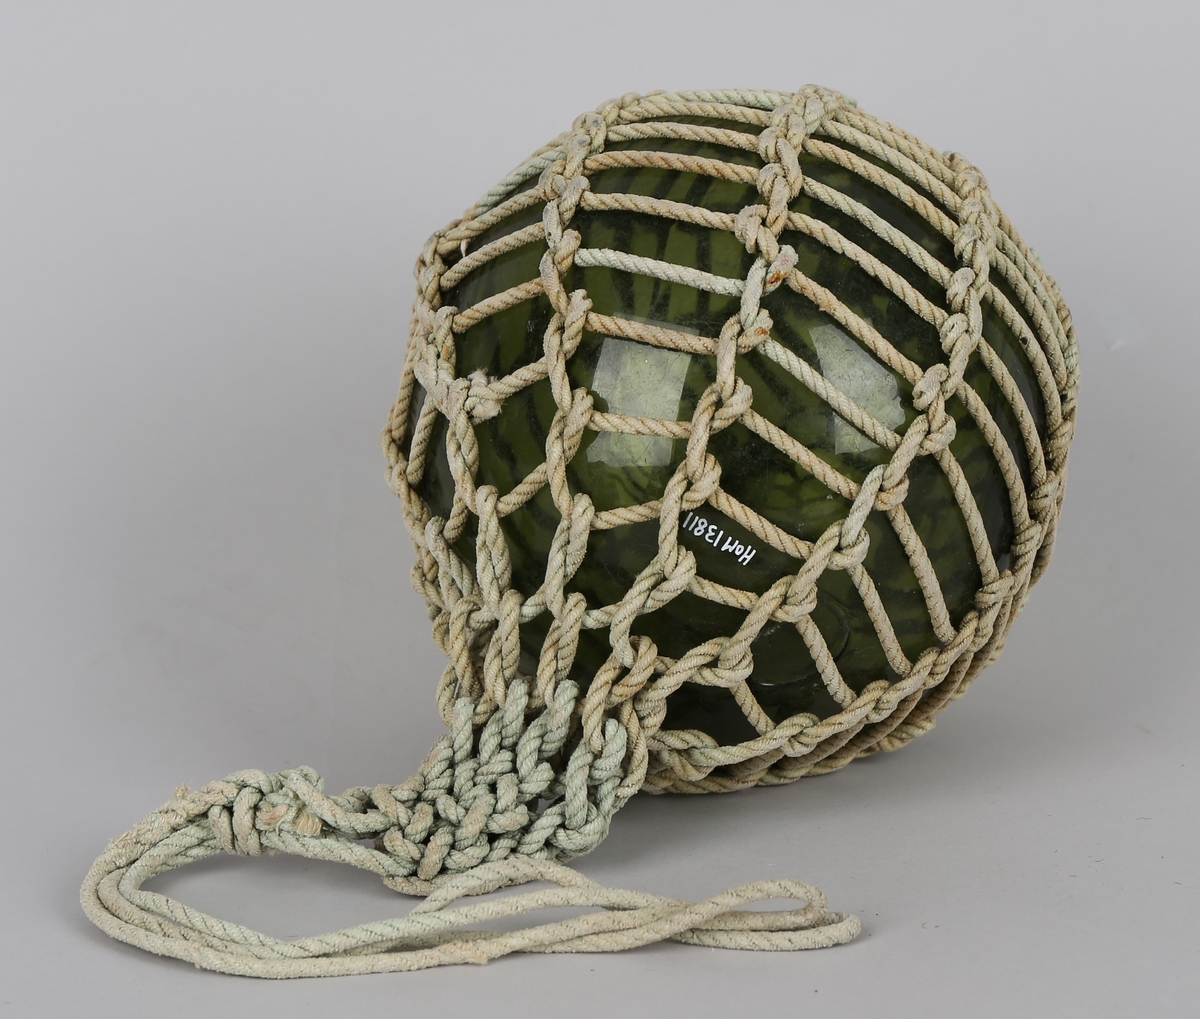 Garnblåse i grønt glass med garn bundet i et nett rundt, kavelhue eller kavelhud. Den har dobbel løkke.